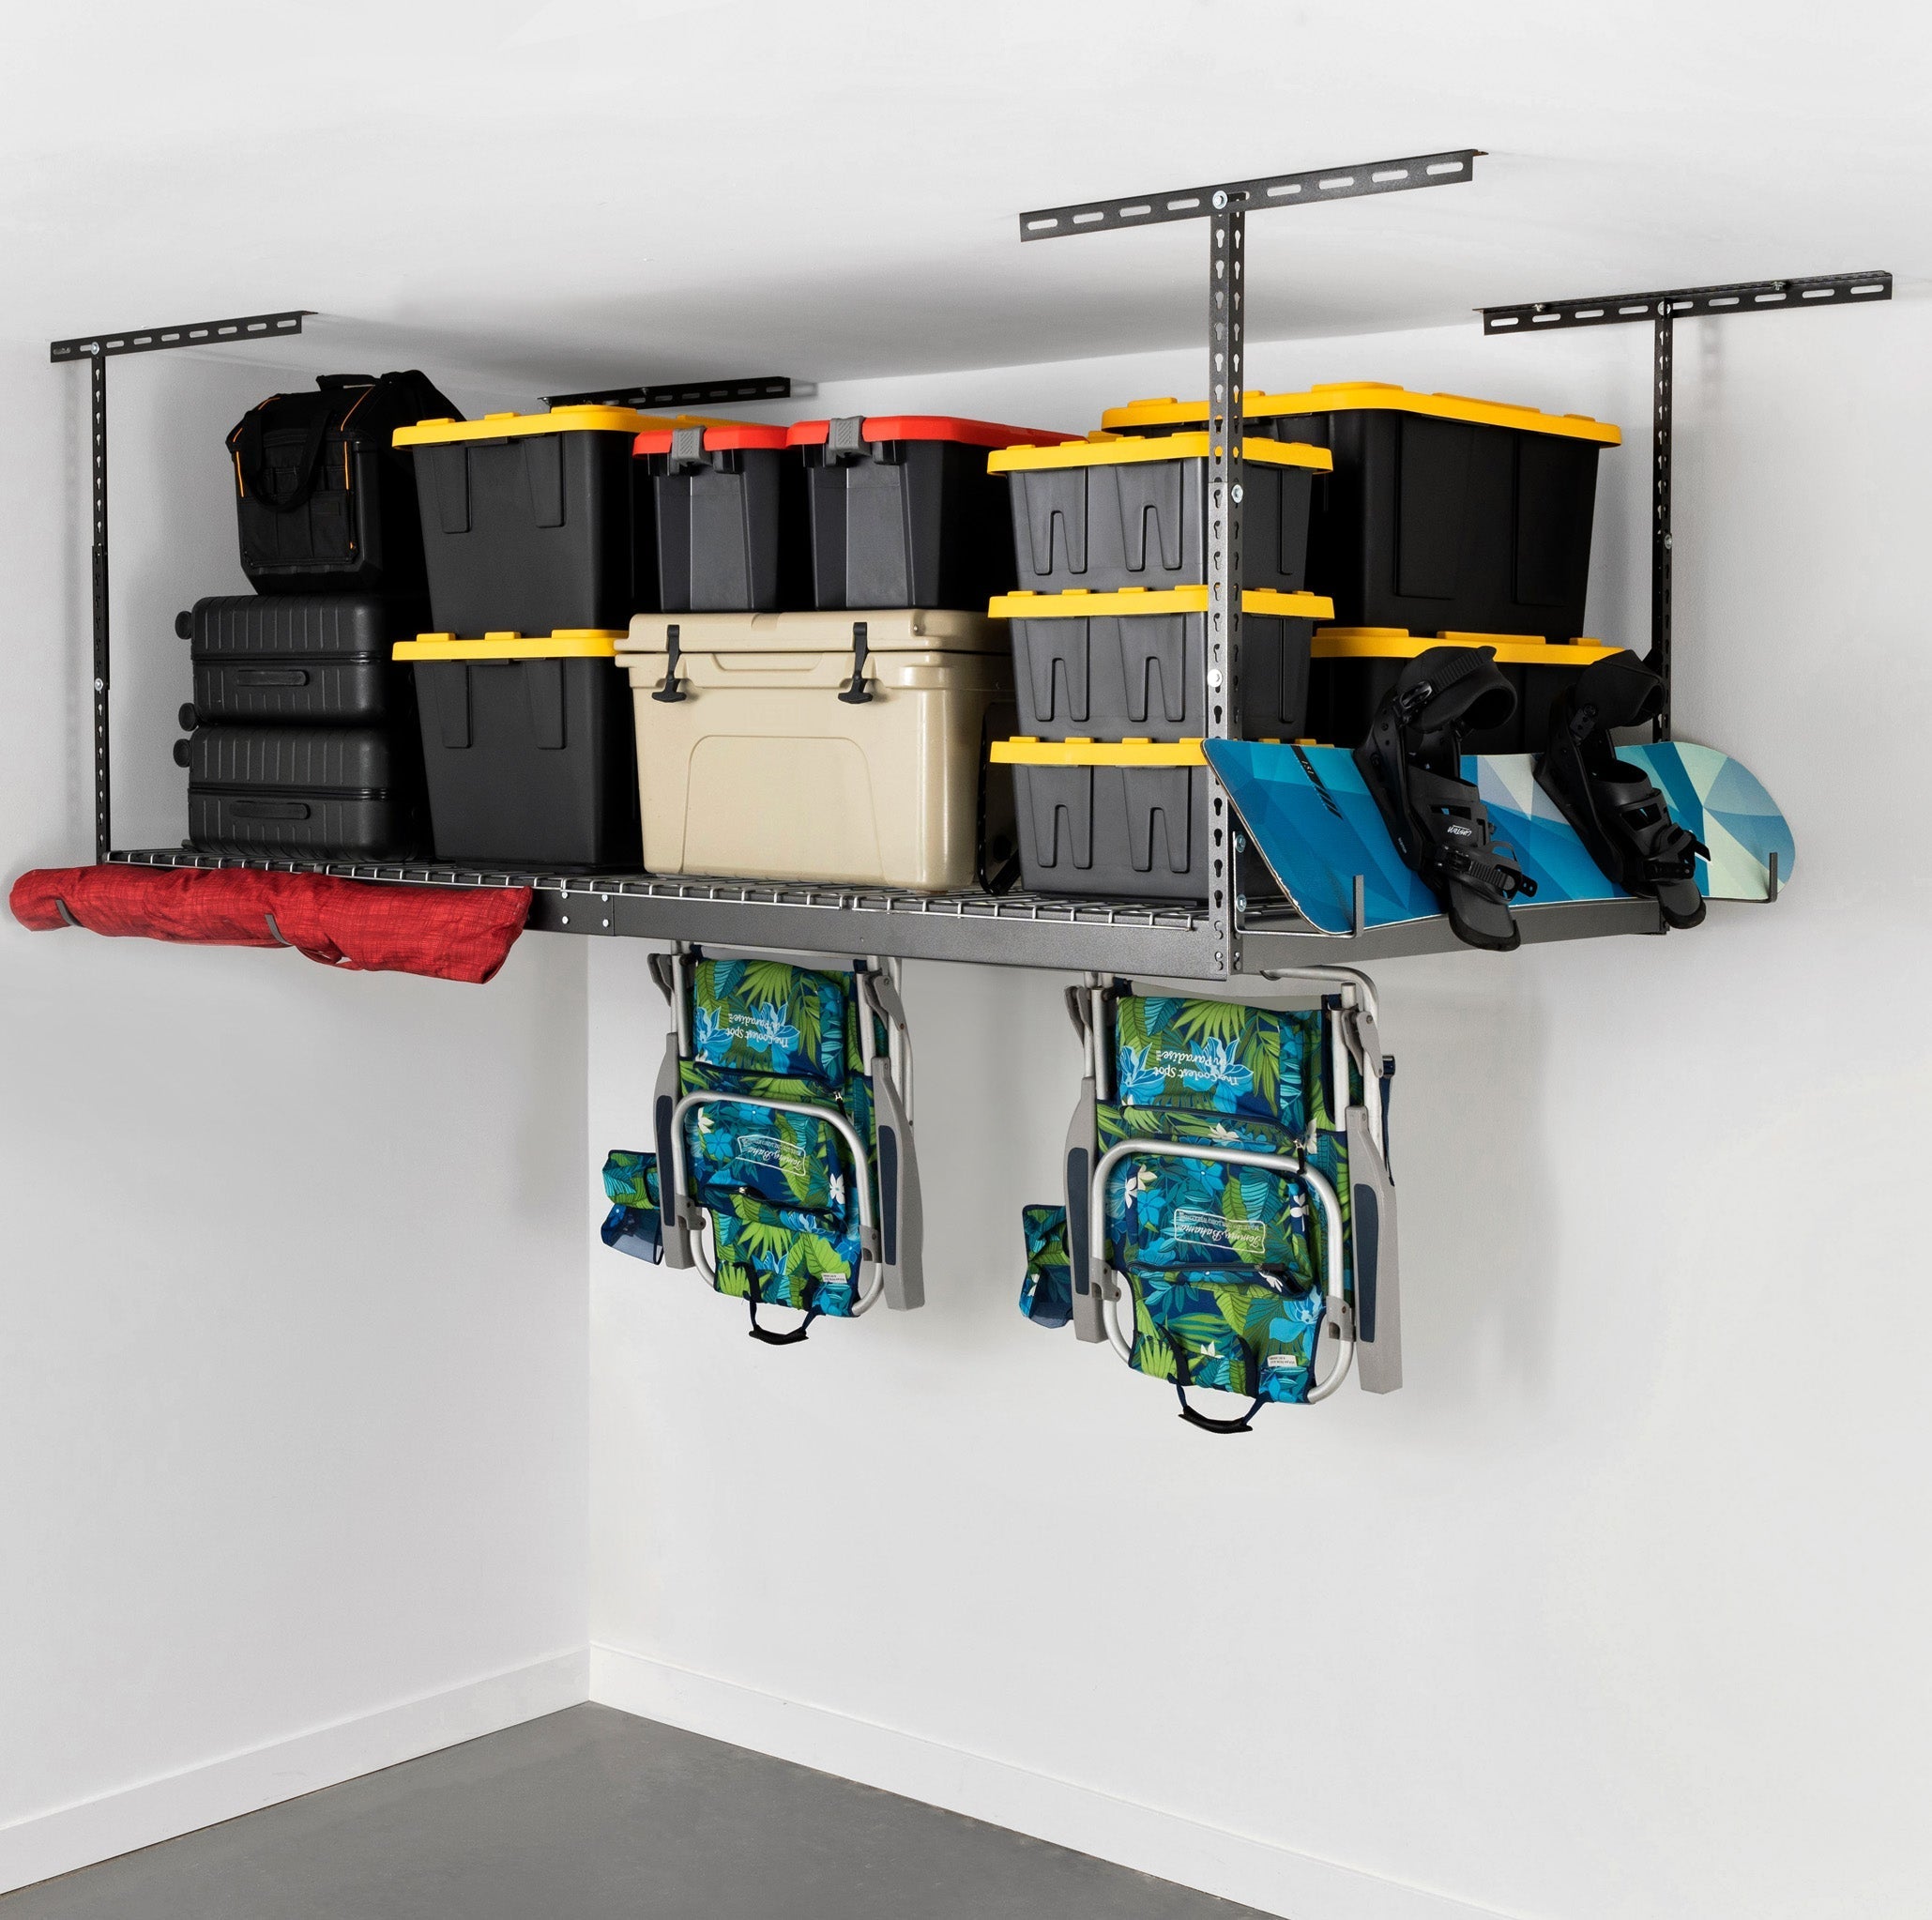 4’ x 8’ Overhead Garage Storage Rack